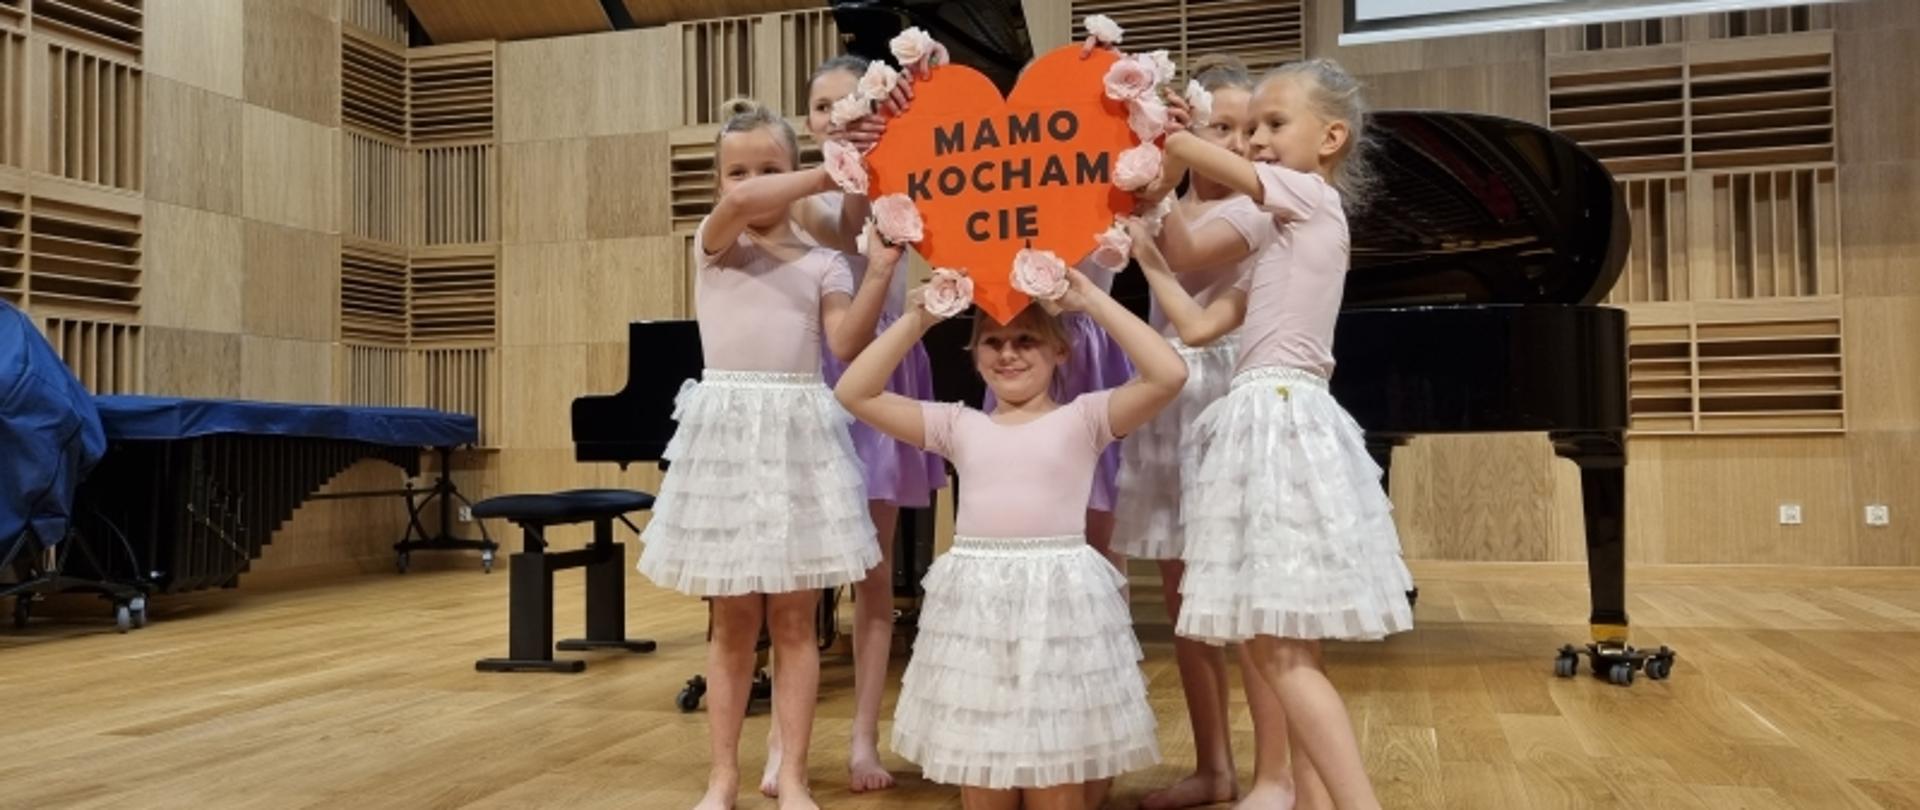 Dzieci w strojach baletowych z napisem " MAMO KOCHAM CIĘ" w kształcie serca.